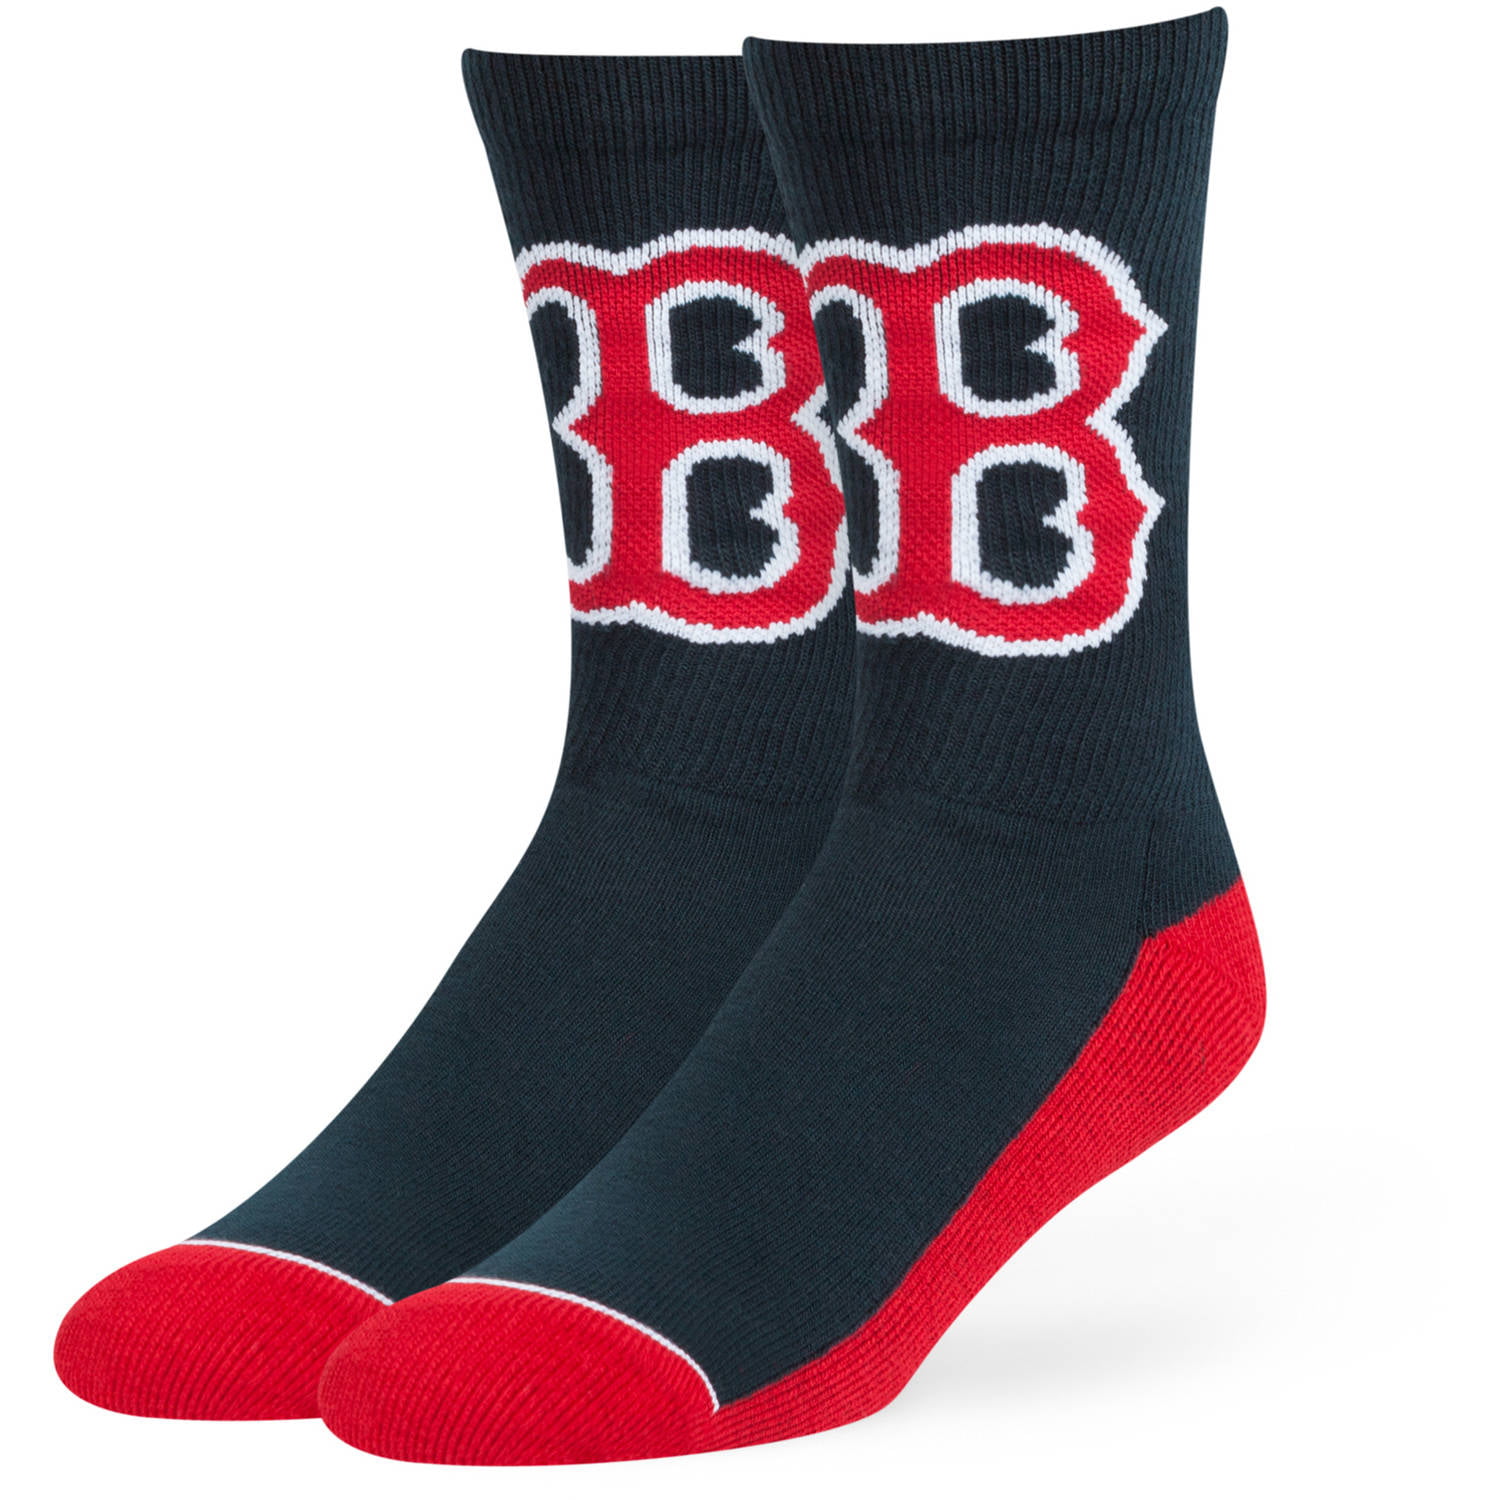 MLB - MLB Boston î€€Redî€ î€€Soxî€ Arena Crew Socks - Fan Favorite - Walmart.com ...